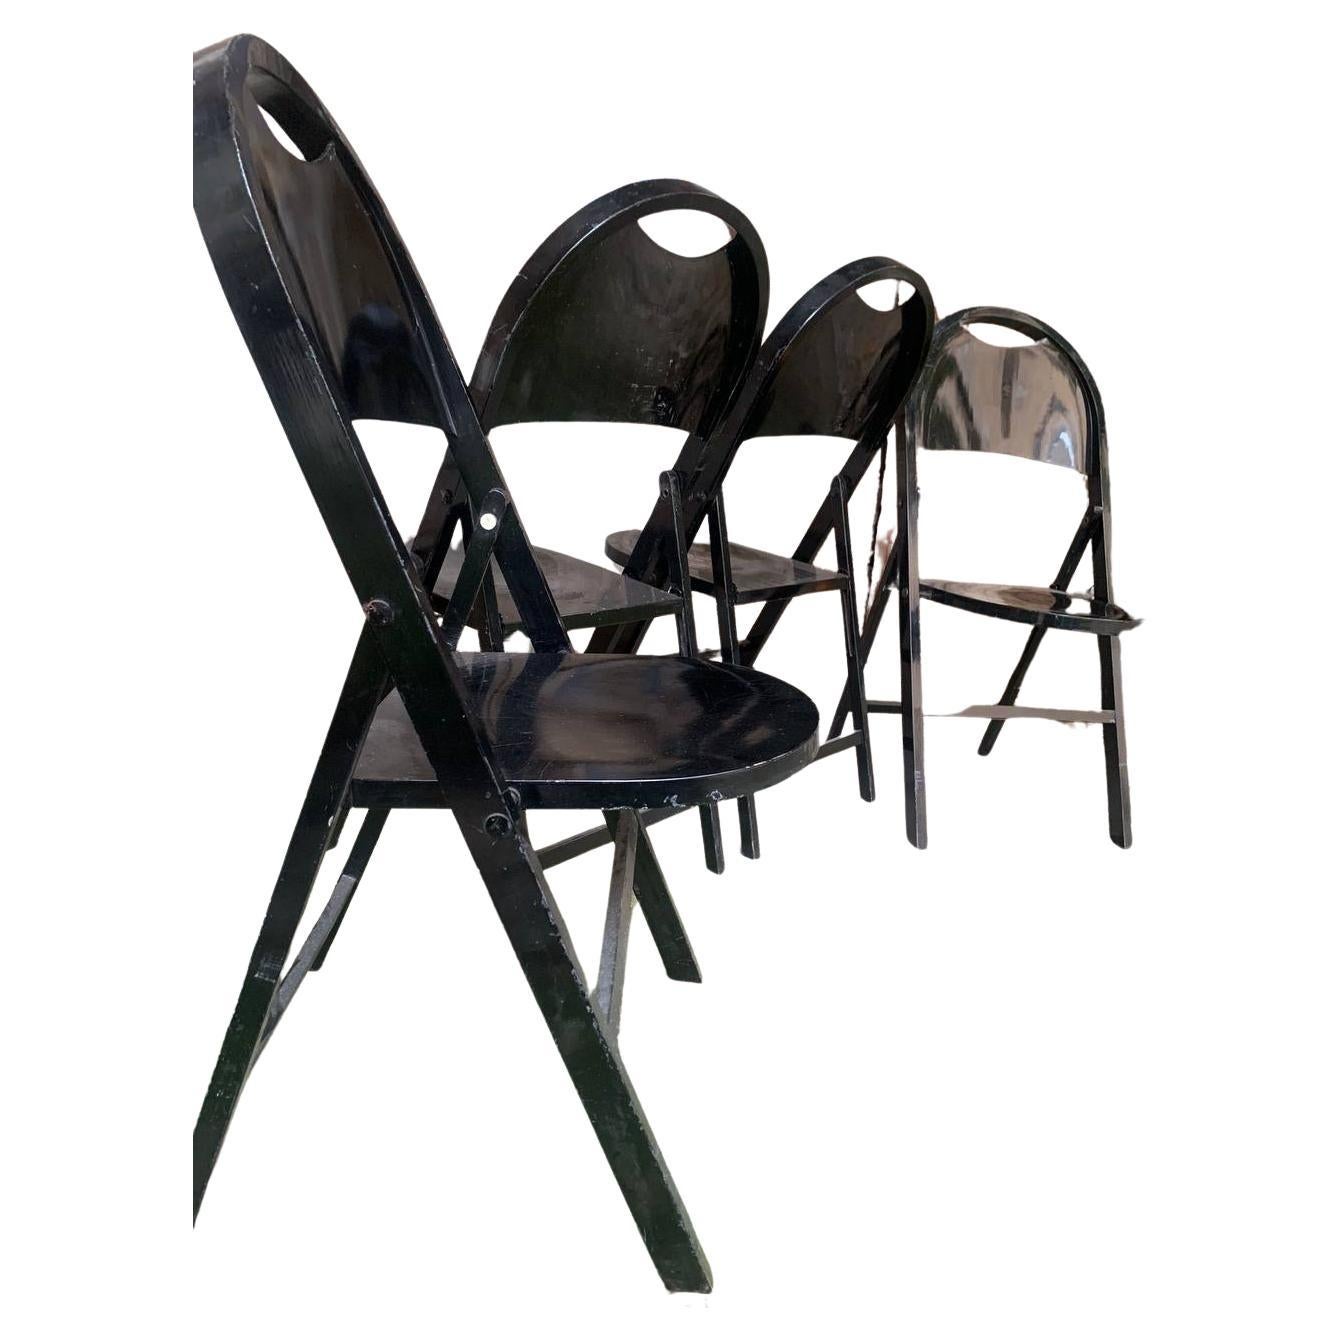 Sedie moderne italiane della metà del secolo Tric di Achille Pier Giacomo Castiglioni anni '60
Set di tre sedie pieghevoli mod. Tric interamente in legno verniciato nero. La seduta e lo schienale sono arrotondati. Le gambe sono a sezione